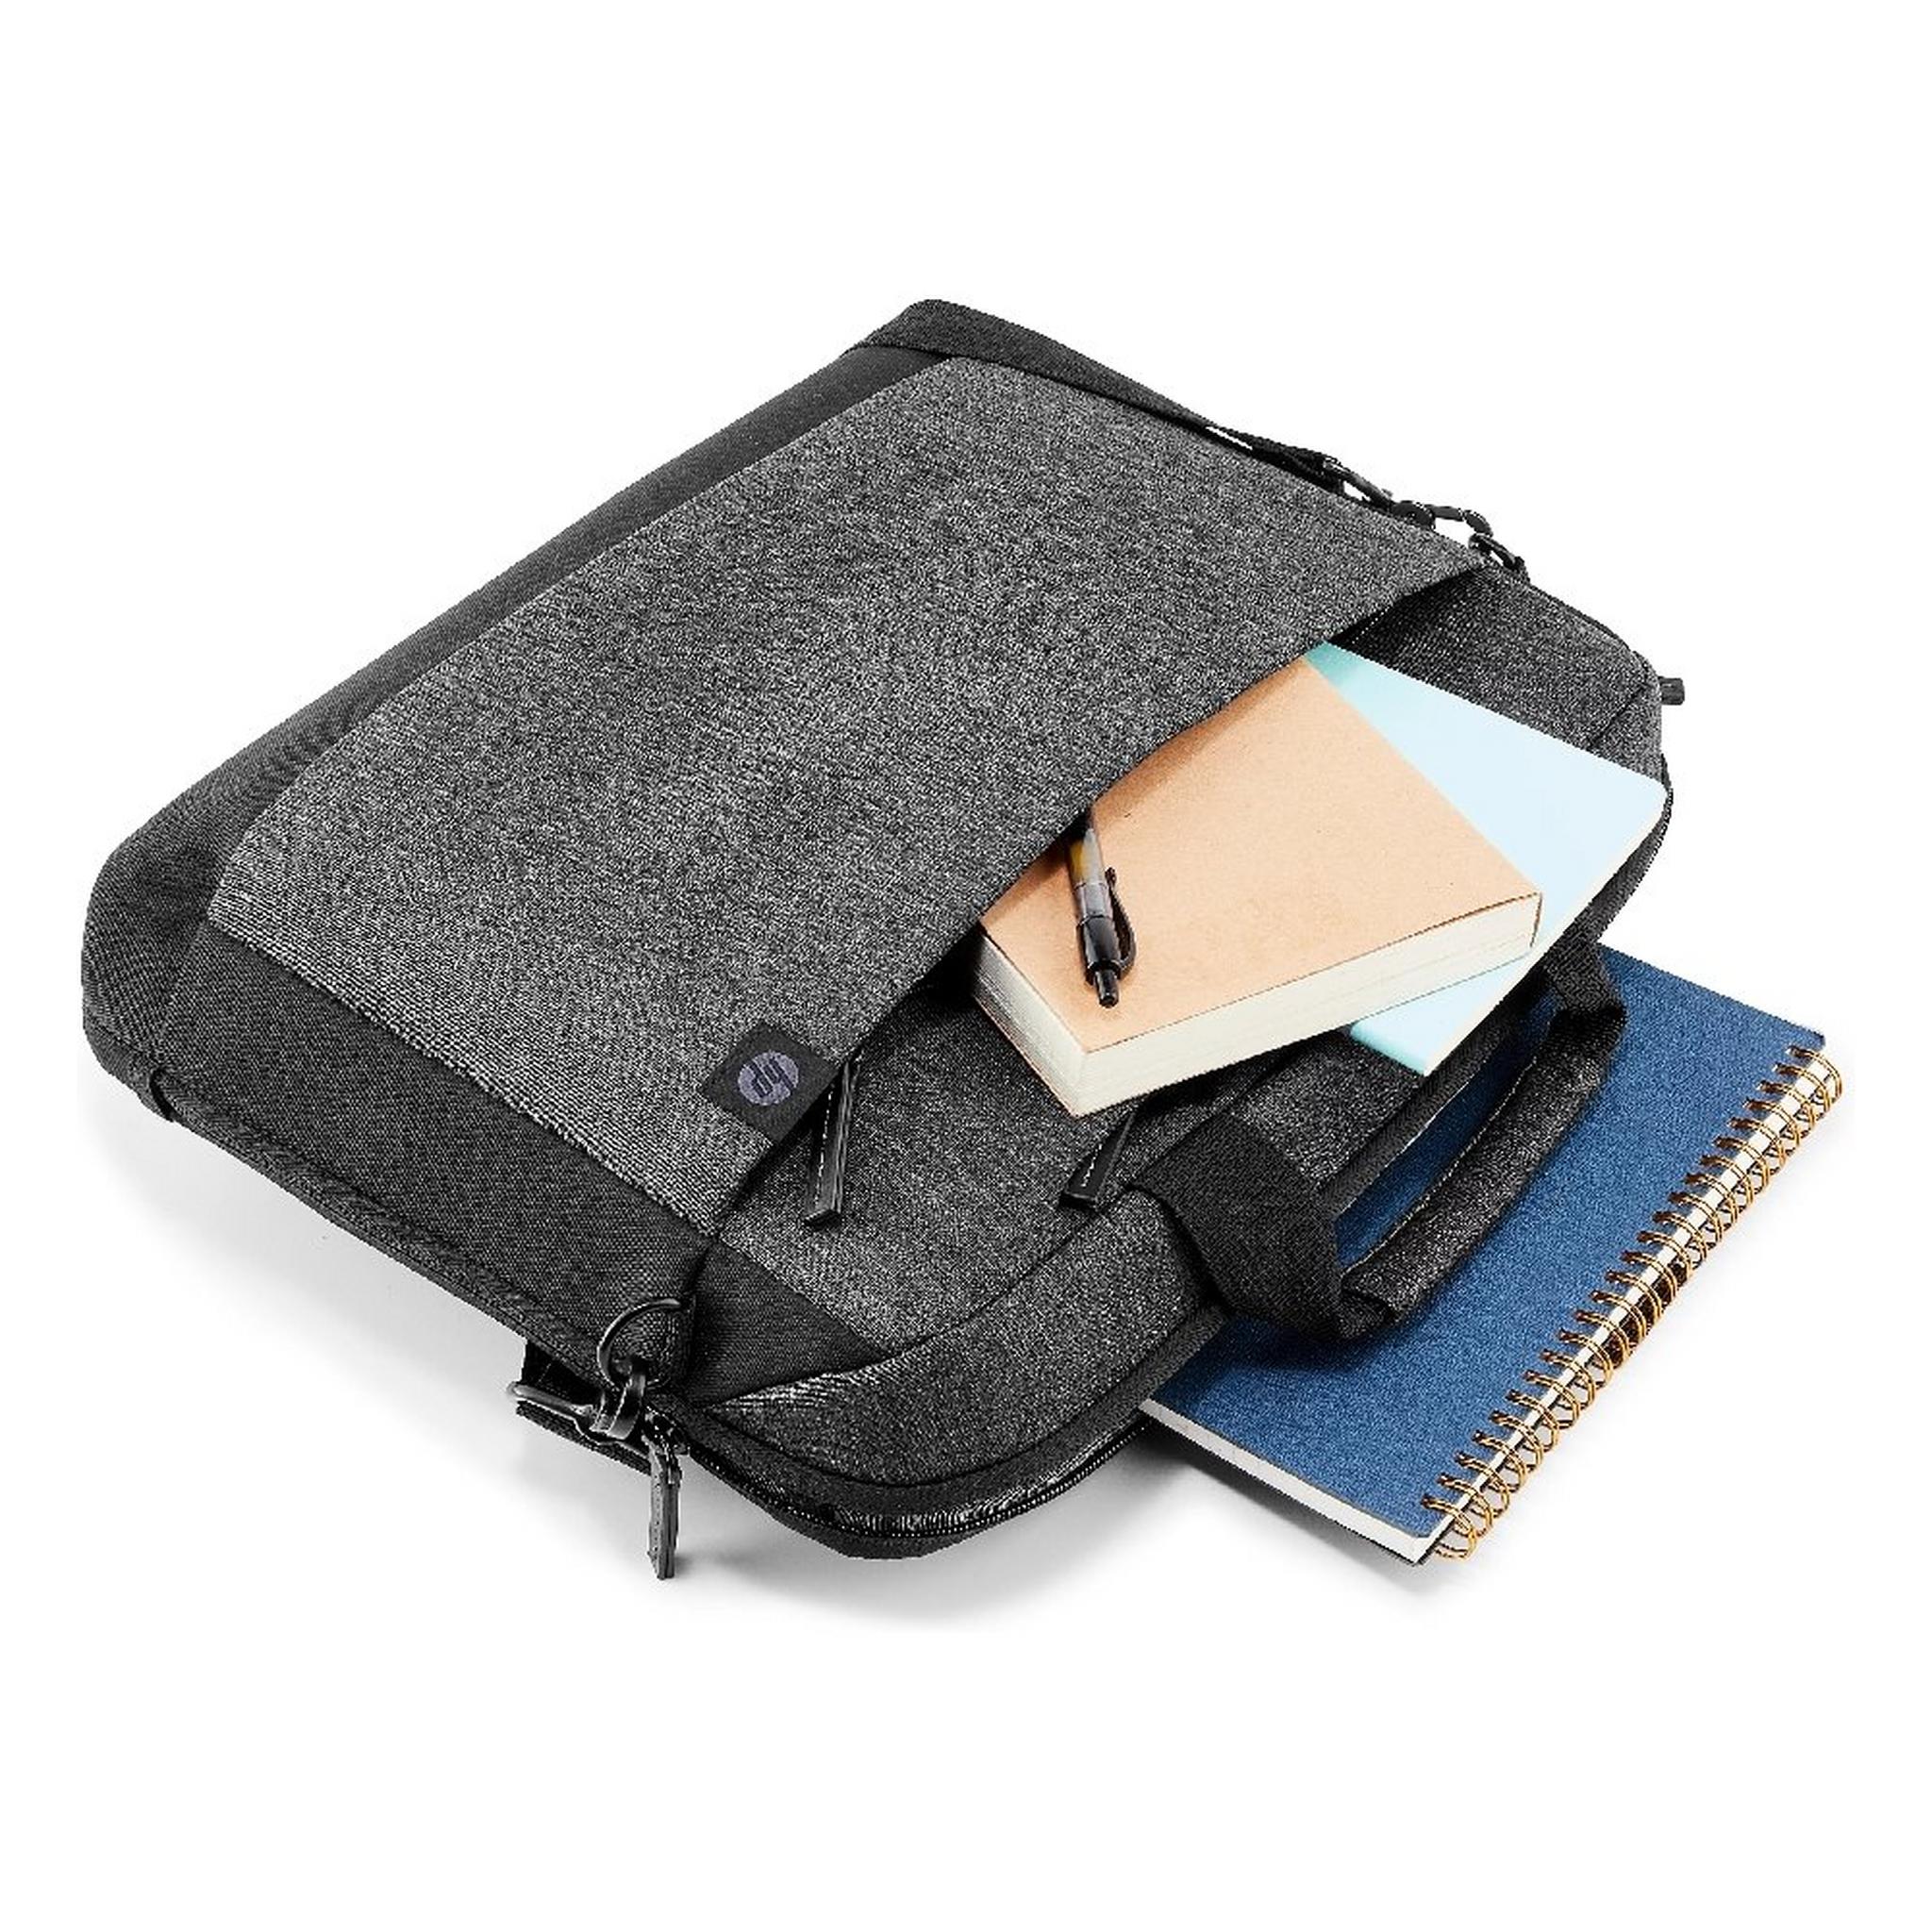 HP Renew Travel 15.6" Laptop Bag - Black